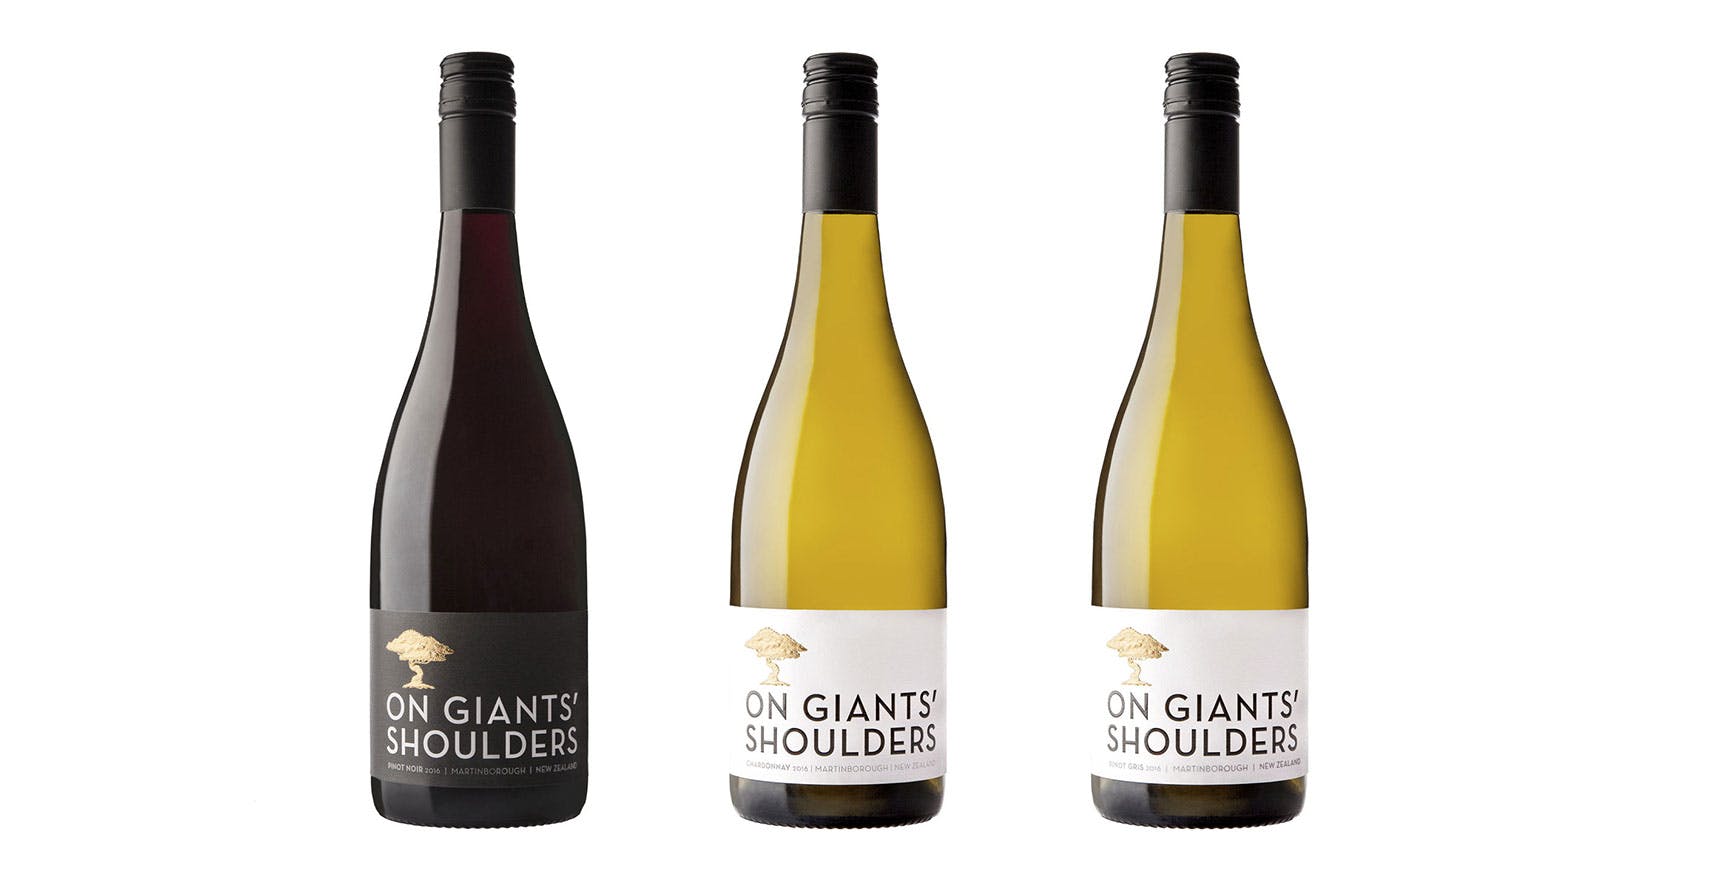 On Giants’ Shoulders Wine Bottle Label Design